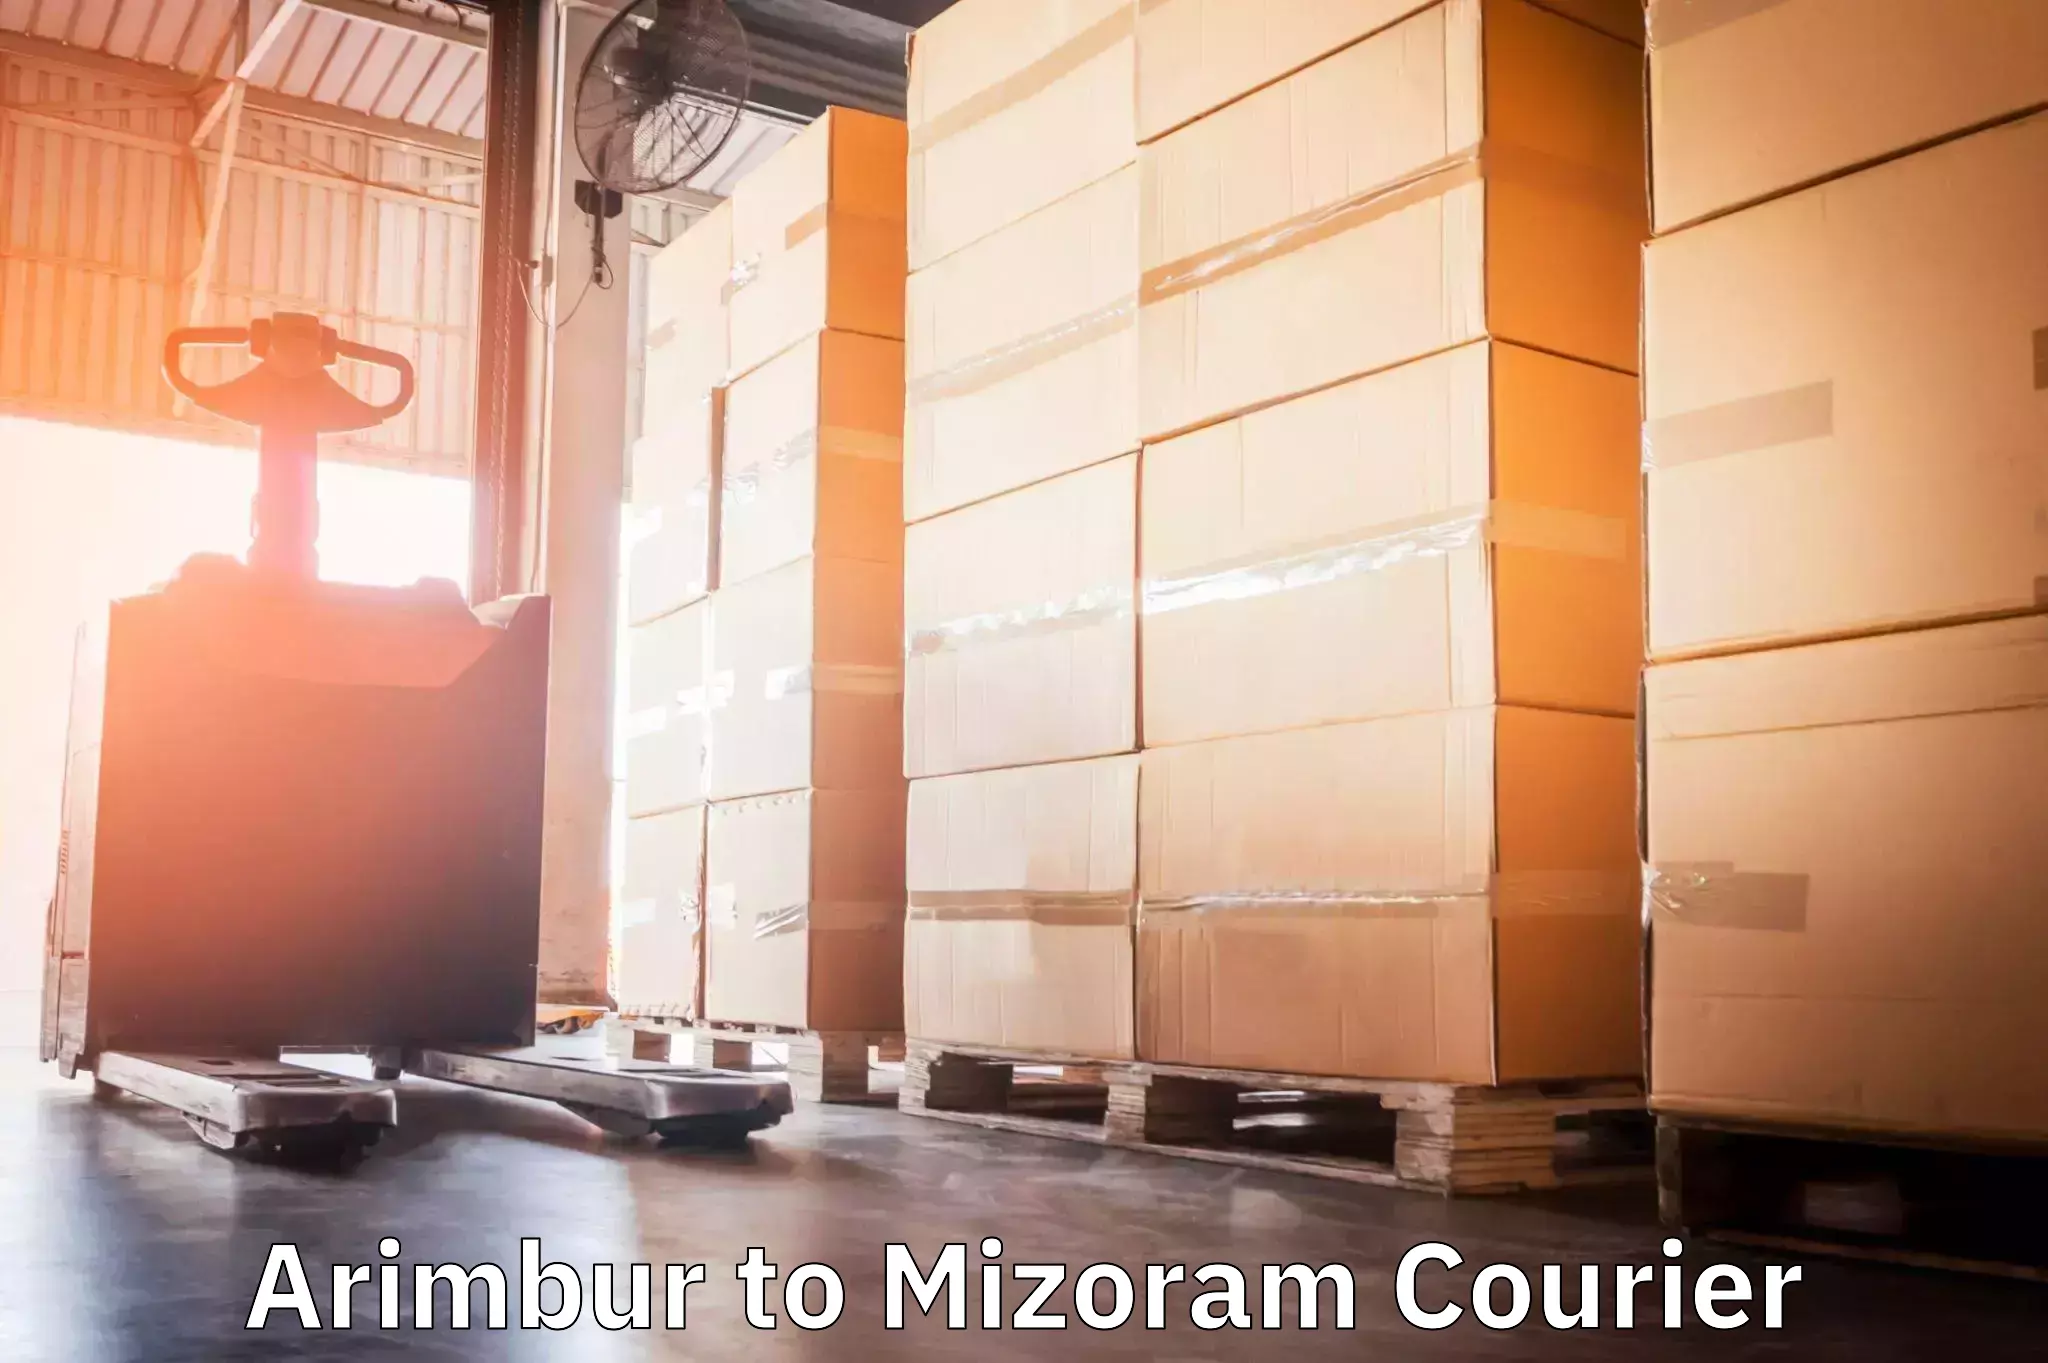 Flexible delivery scheduling Arimbur to Mizoram